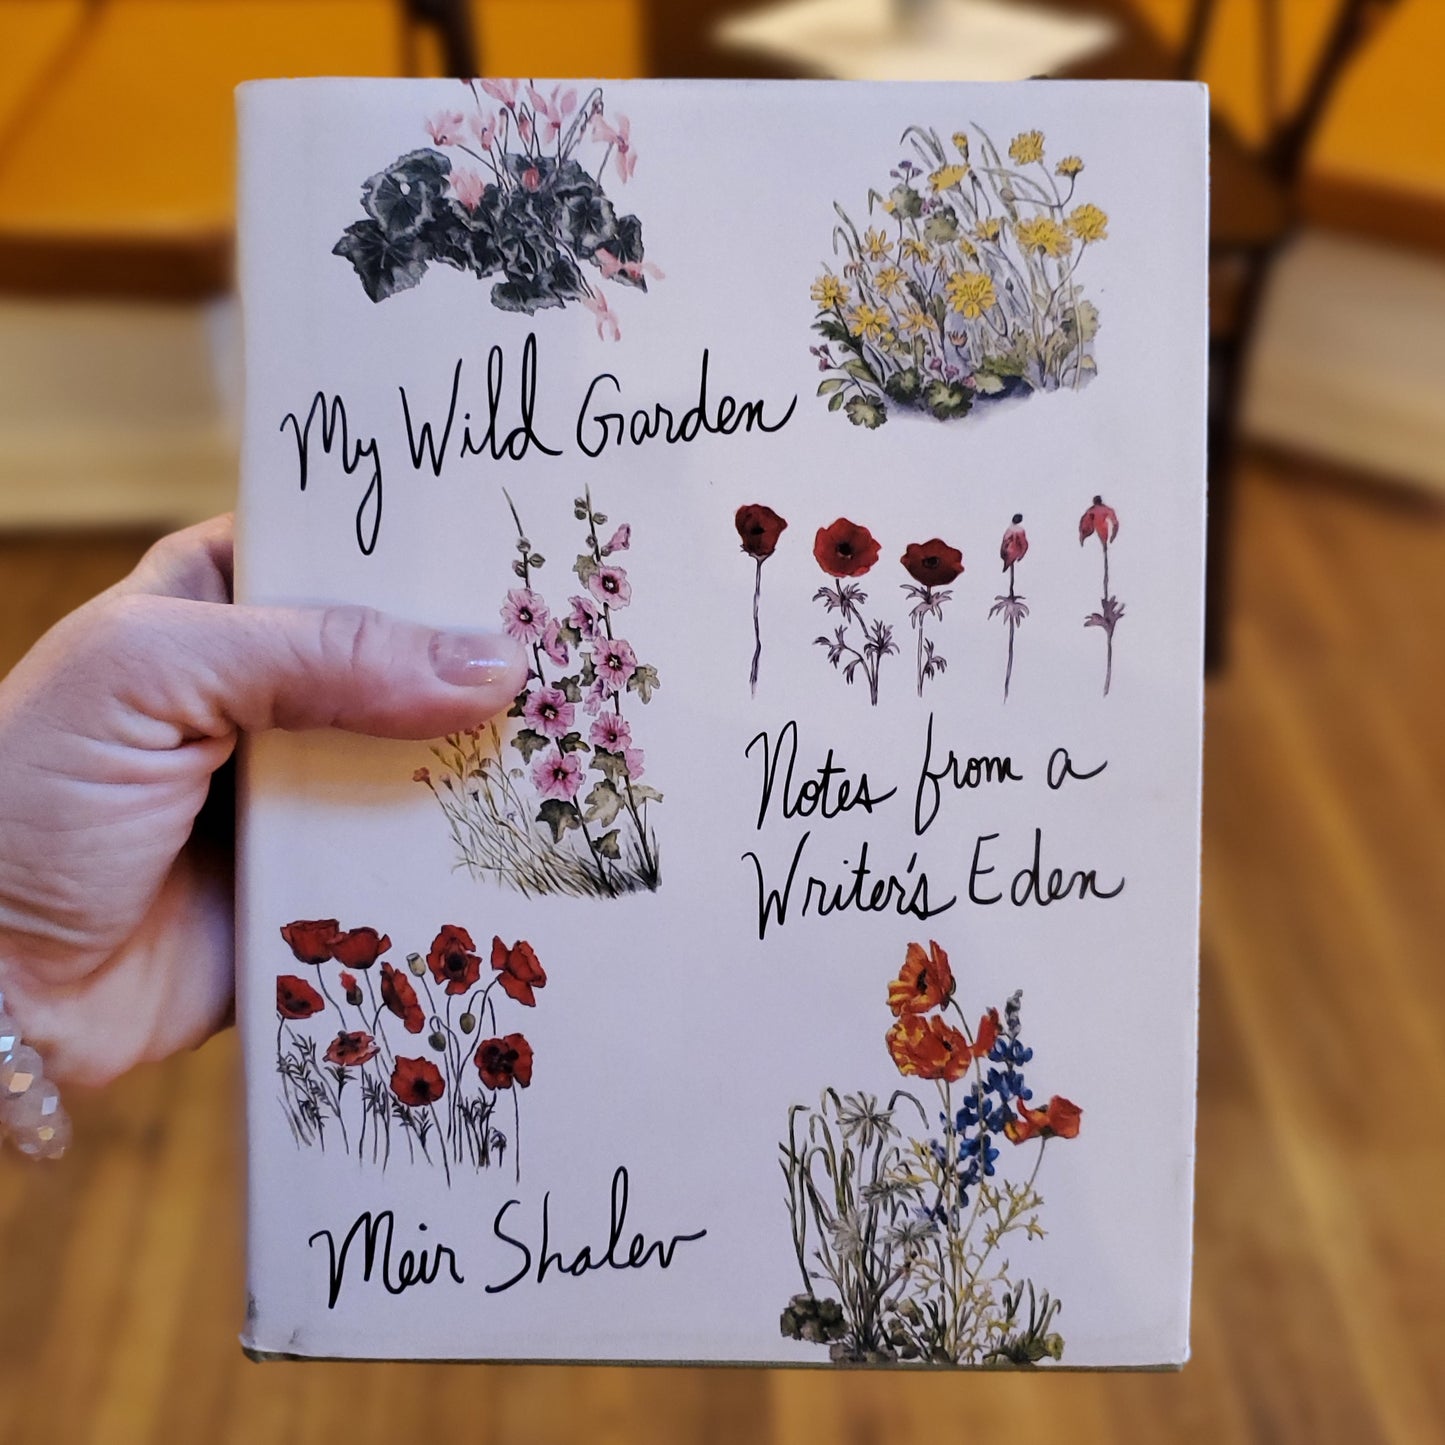 GB My Wild Garden: Notes from a Writer's Eden